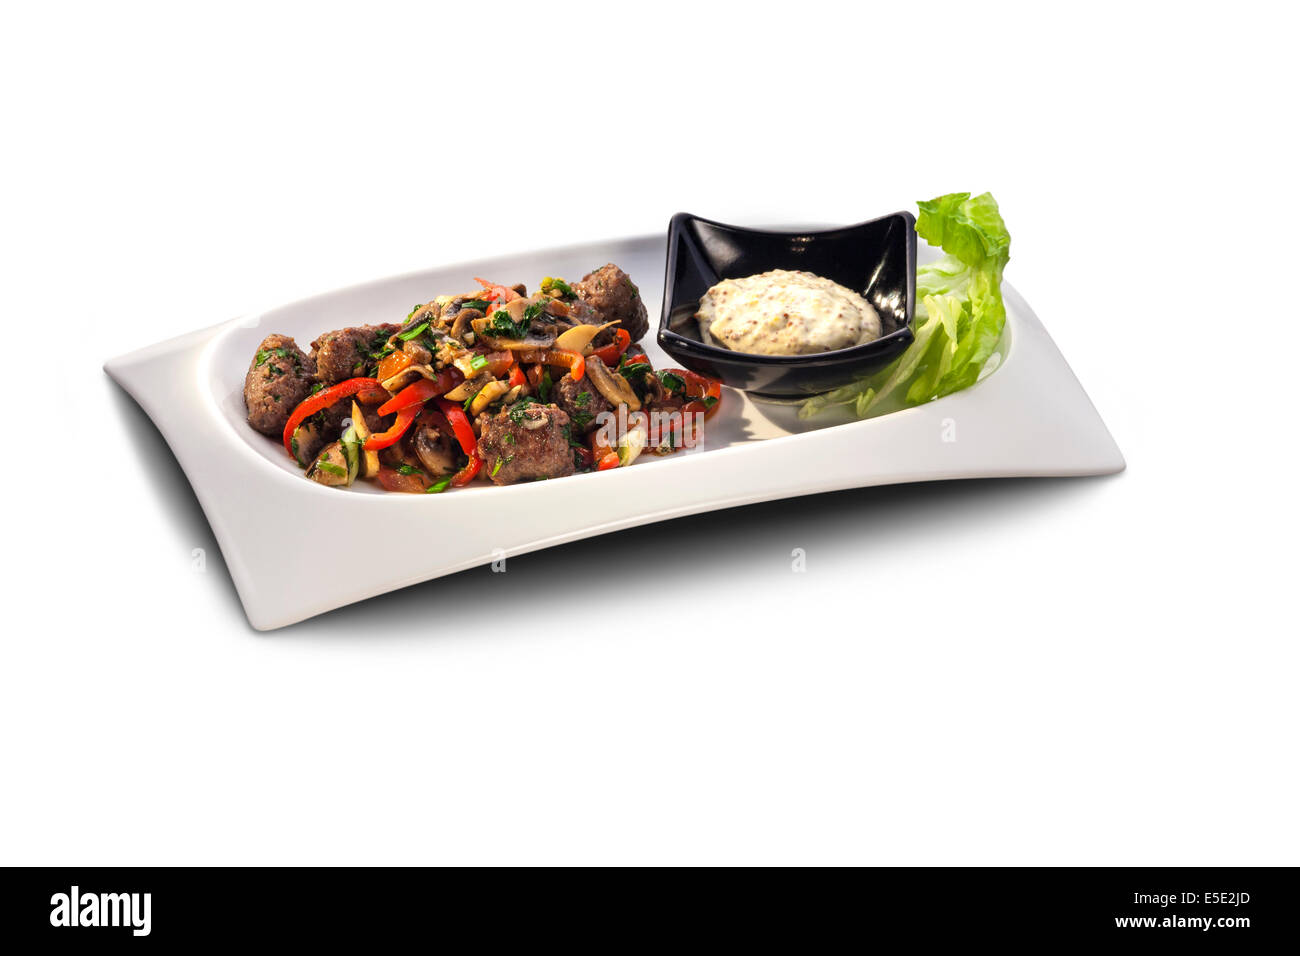 Les boulettes de viande et de légumes sur une assiette décorée avec de la sauce isolated on white Banque D'Images